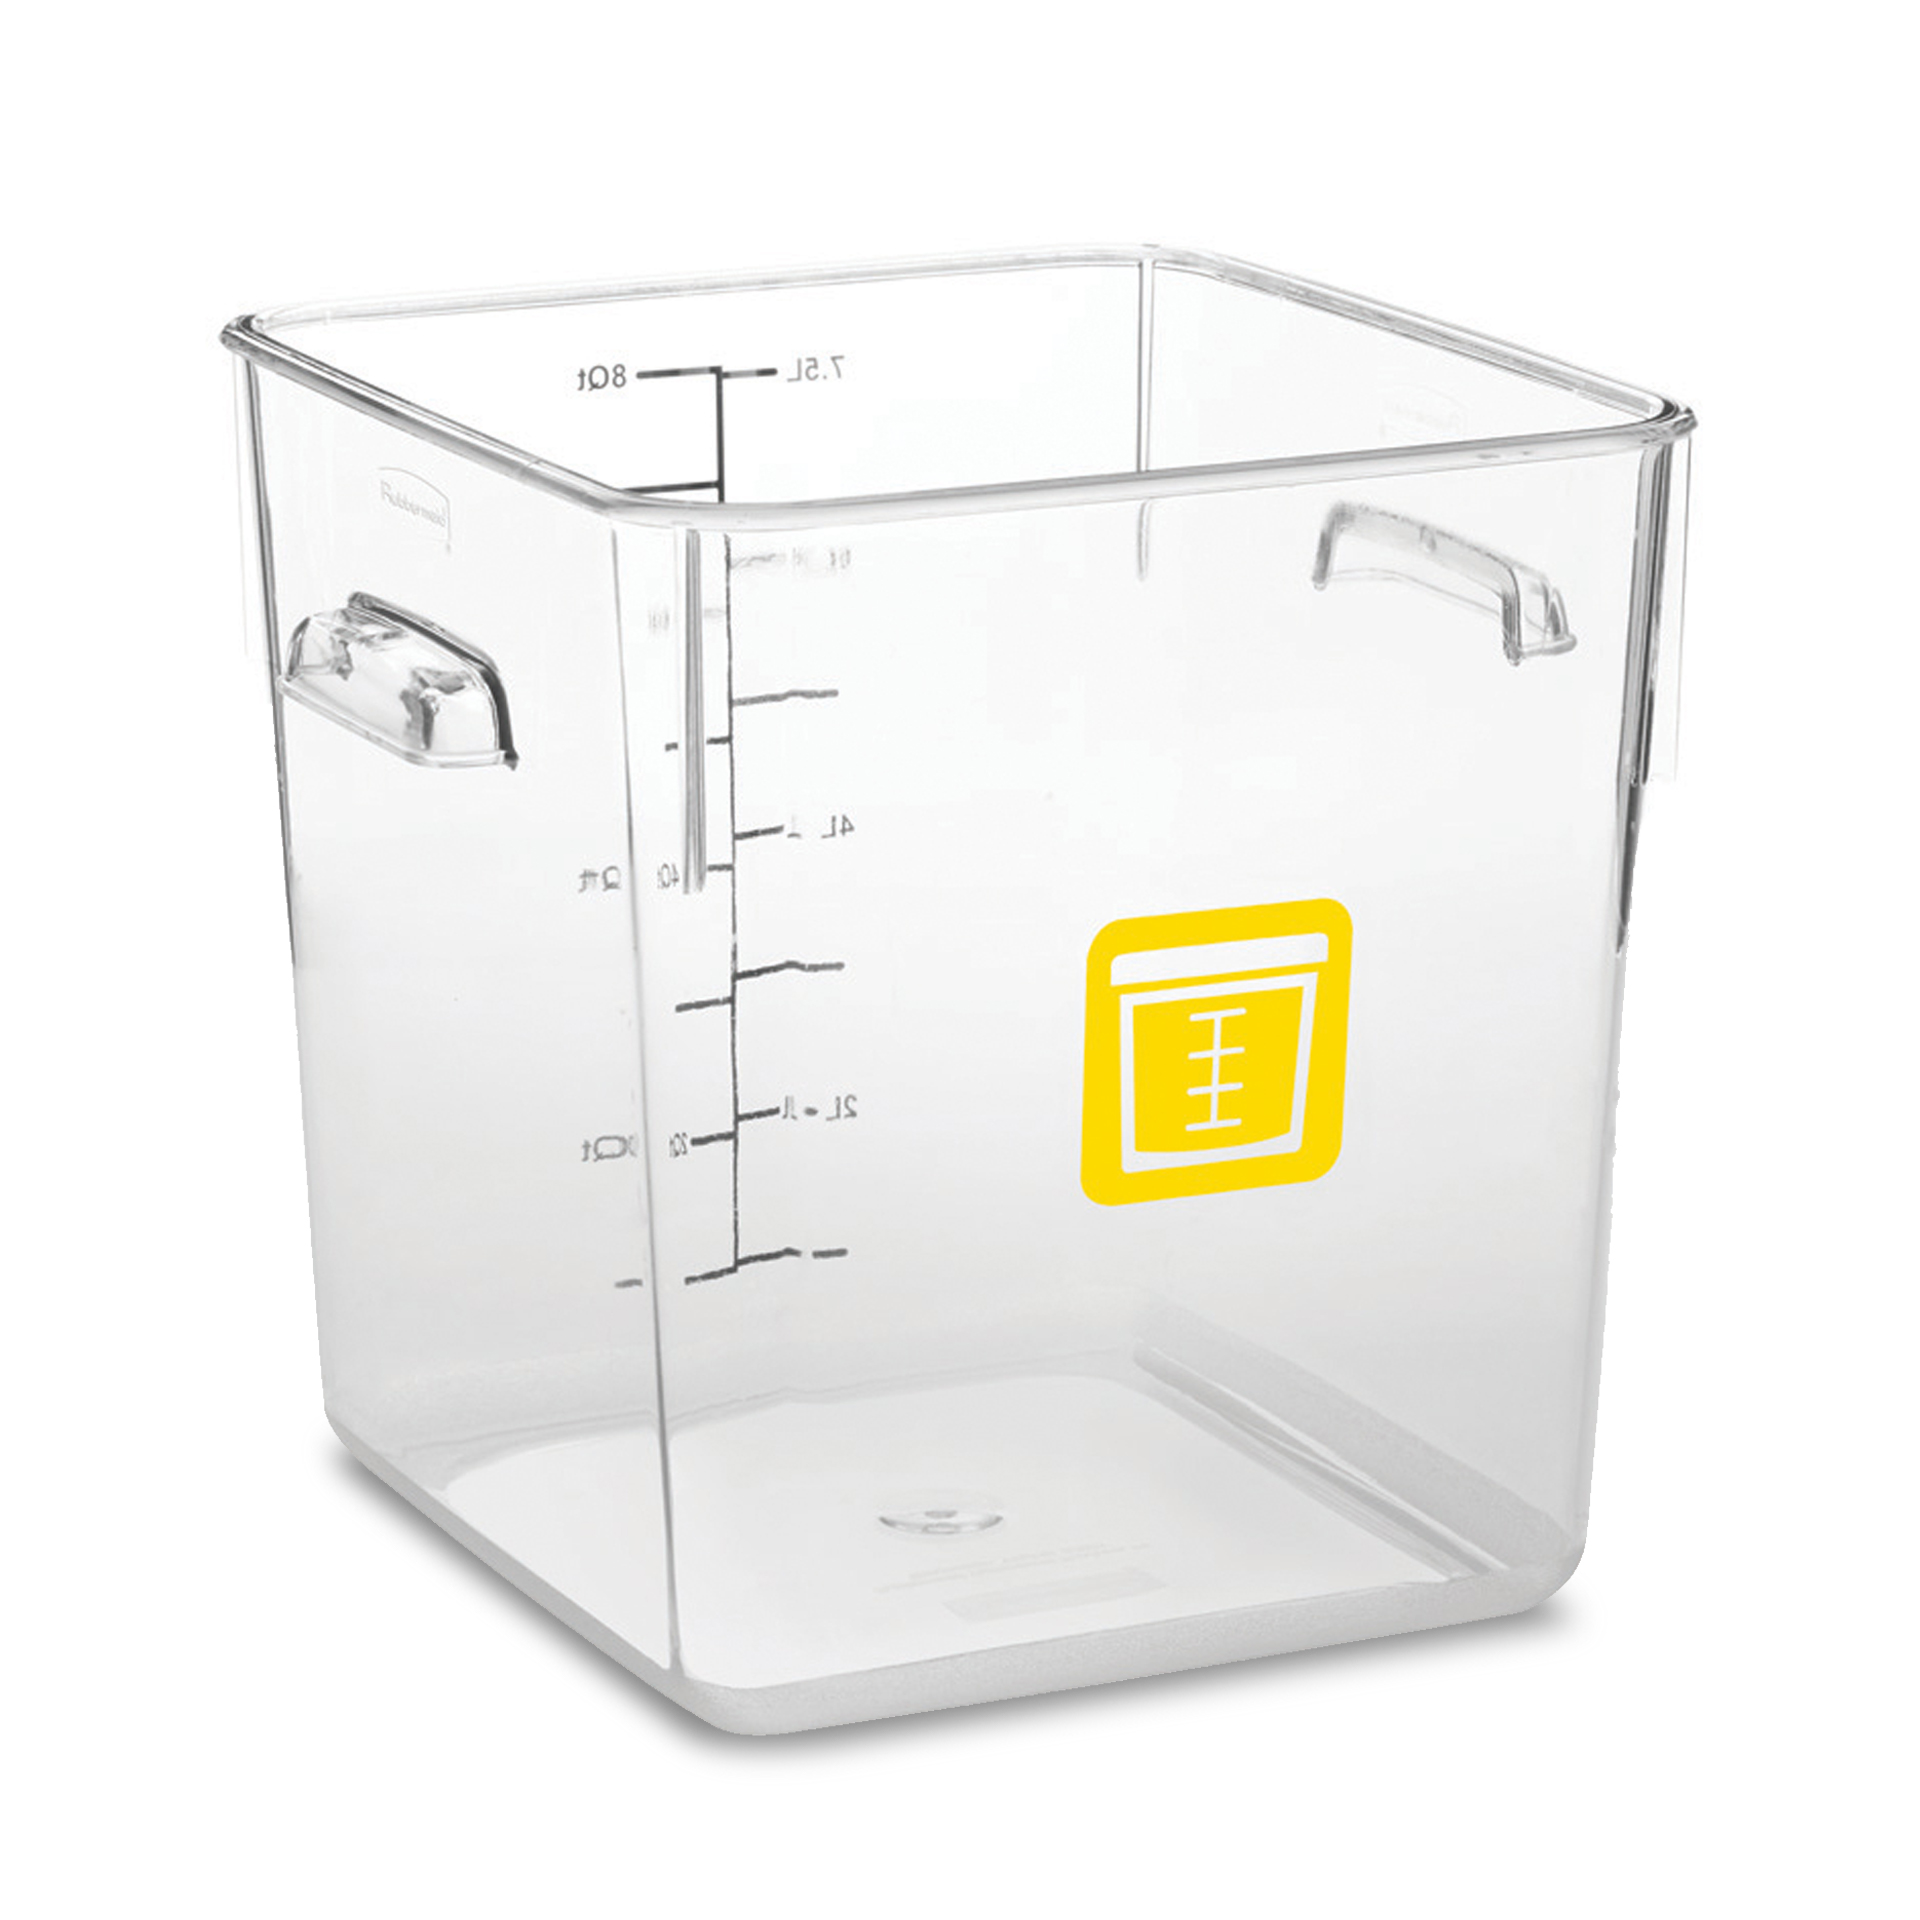 กล่องเก็บวัตถุดิบอาหารสี่เหลี่ยม Color-Coded Square Container Clear ขนาด 8 qt สีเหลือง